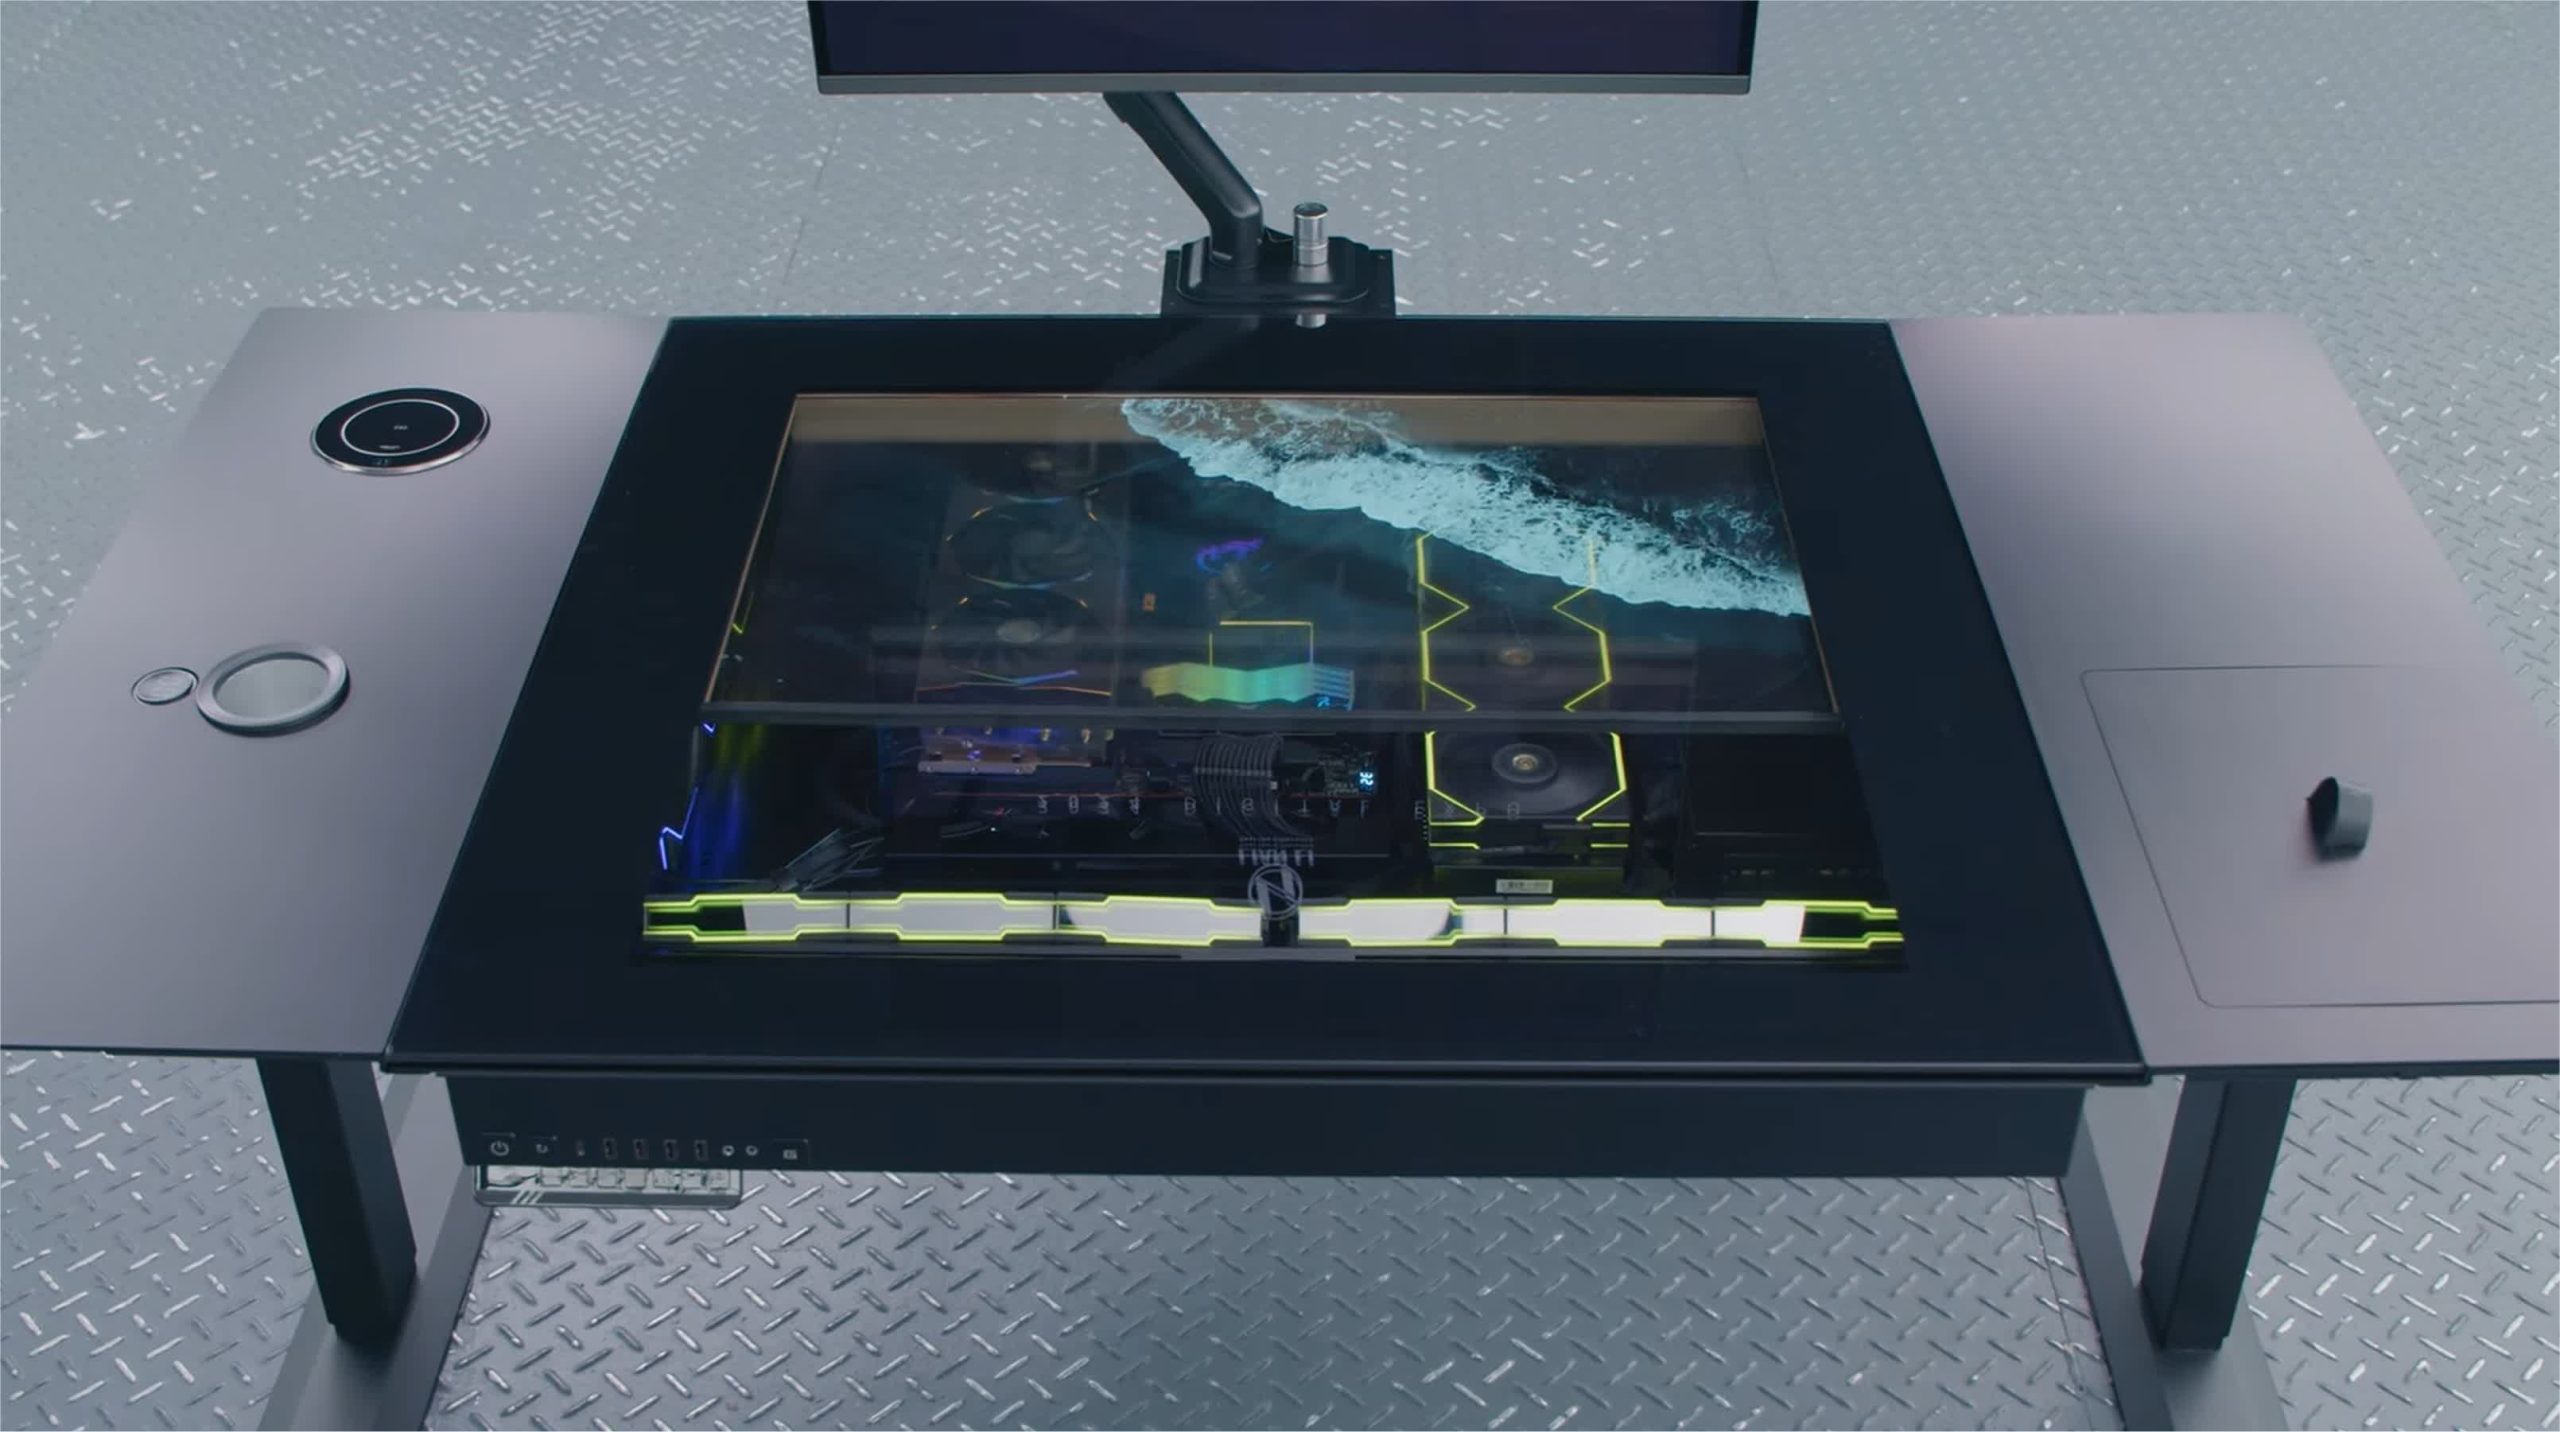 El prototipo de escritorio para juegos de Lian Li cuenta con una pantalla OLED transparente incorporada